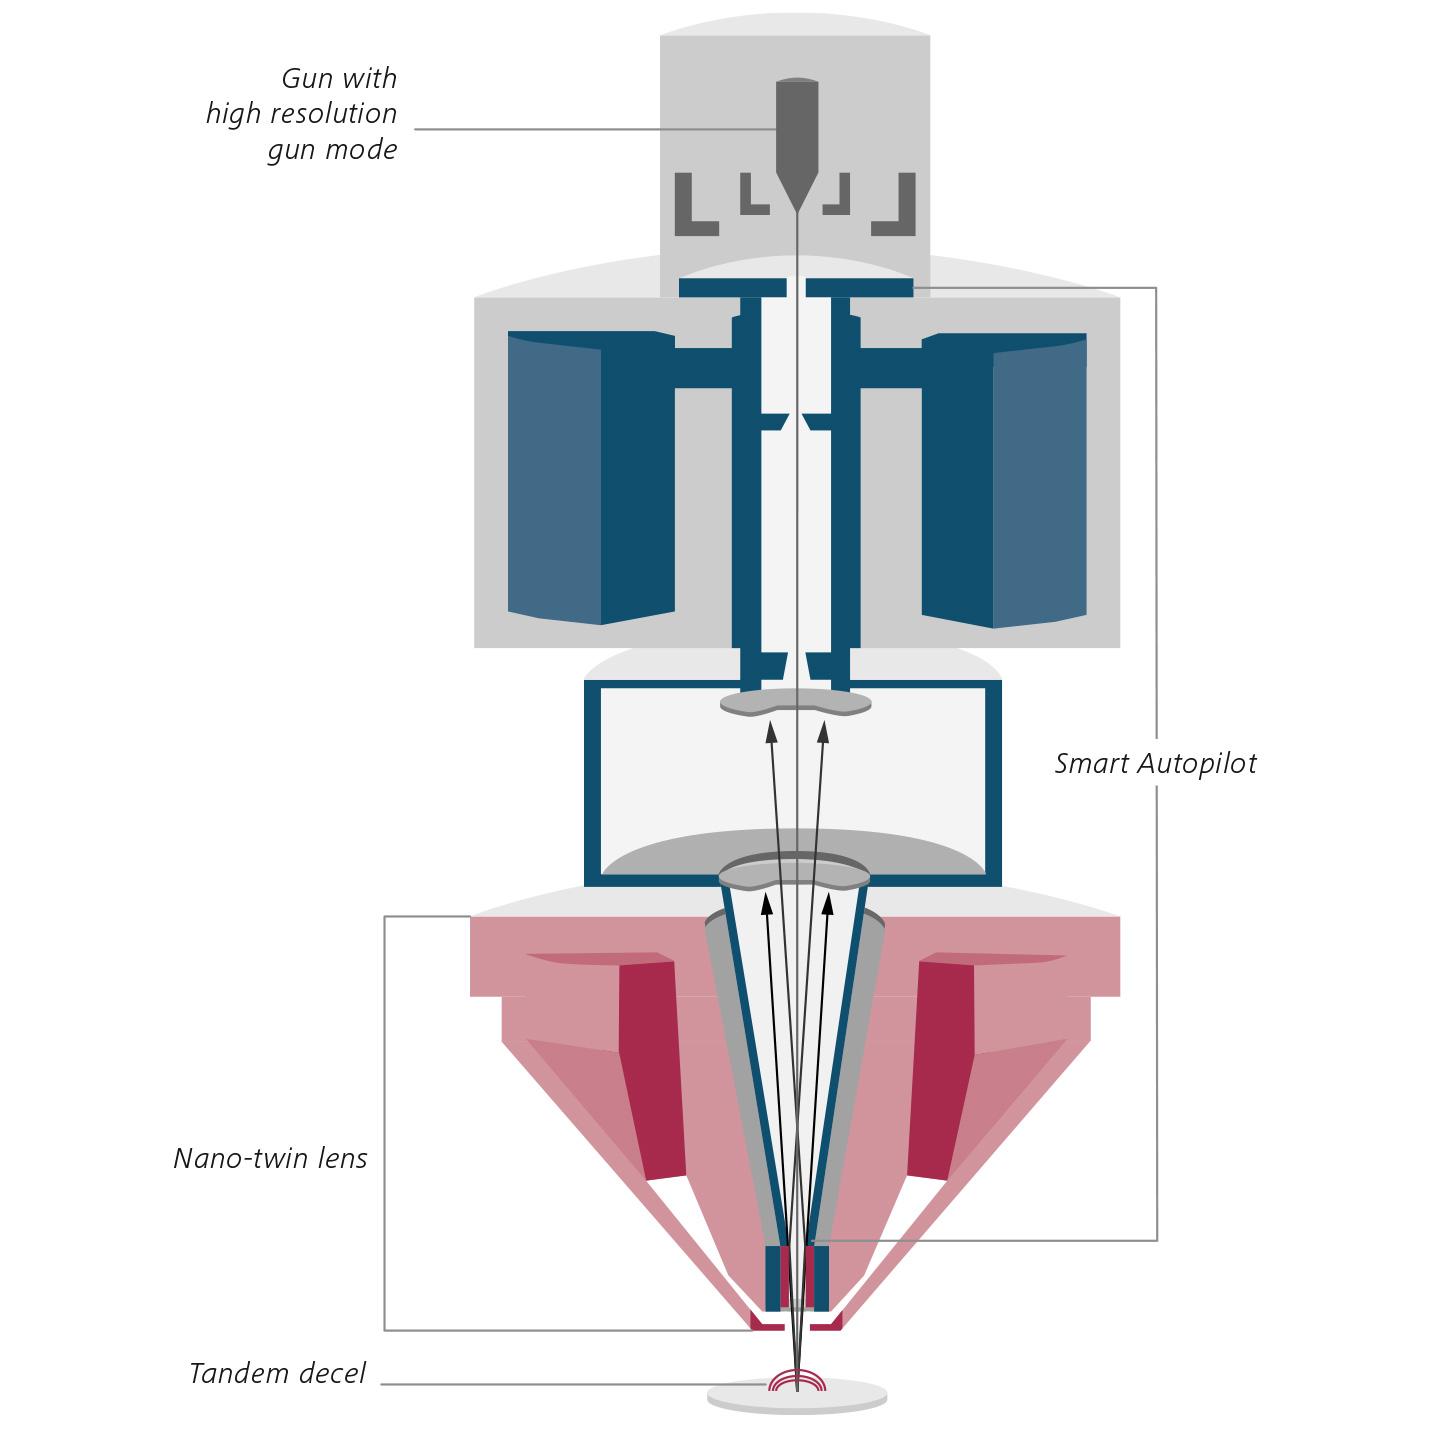 Nuevo diseño óptico de la columna Gemini 3. Sección transversal esquemática de GeminiSEM 560. Lentes dobles de escala nanométrica (rojo), Smart Autopilot (azul).